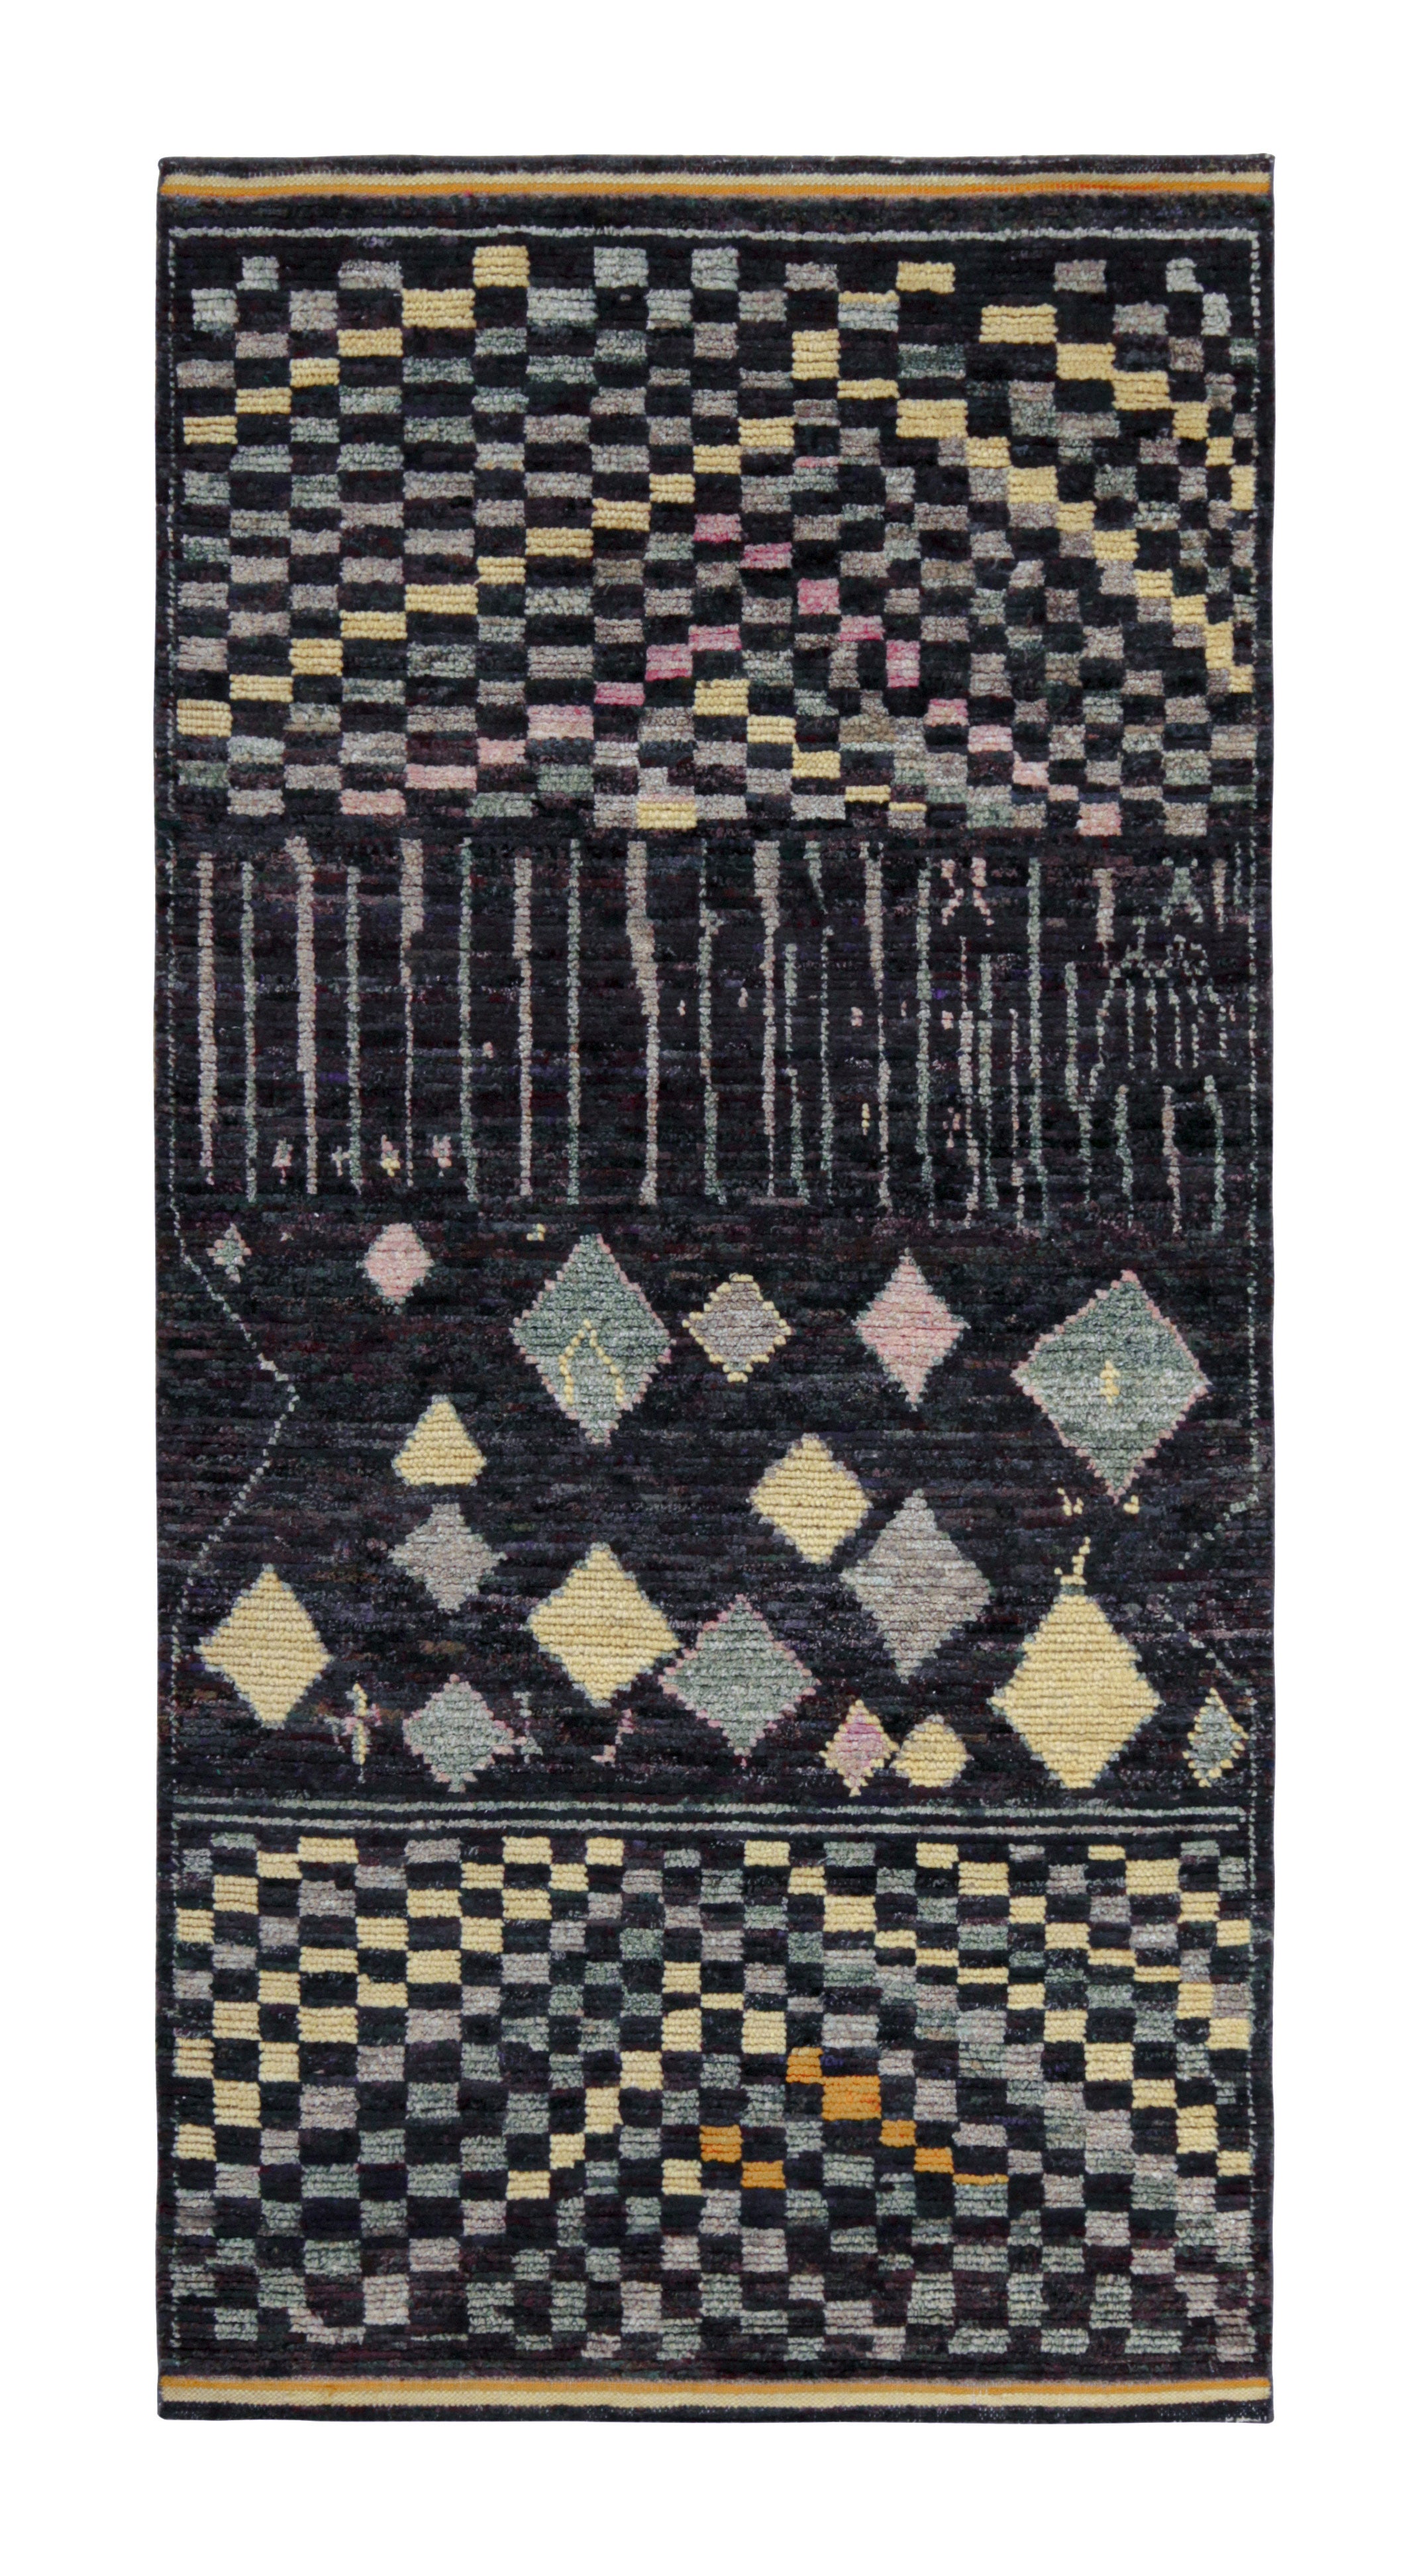 Tapis et tapis de style marocain de Kilim en noir avec motif géométrique coloré